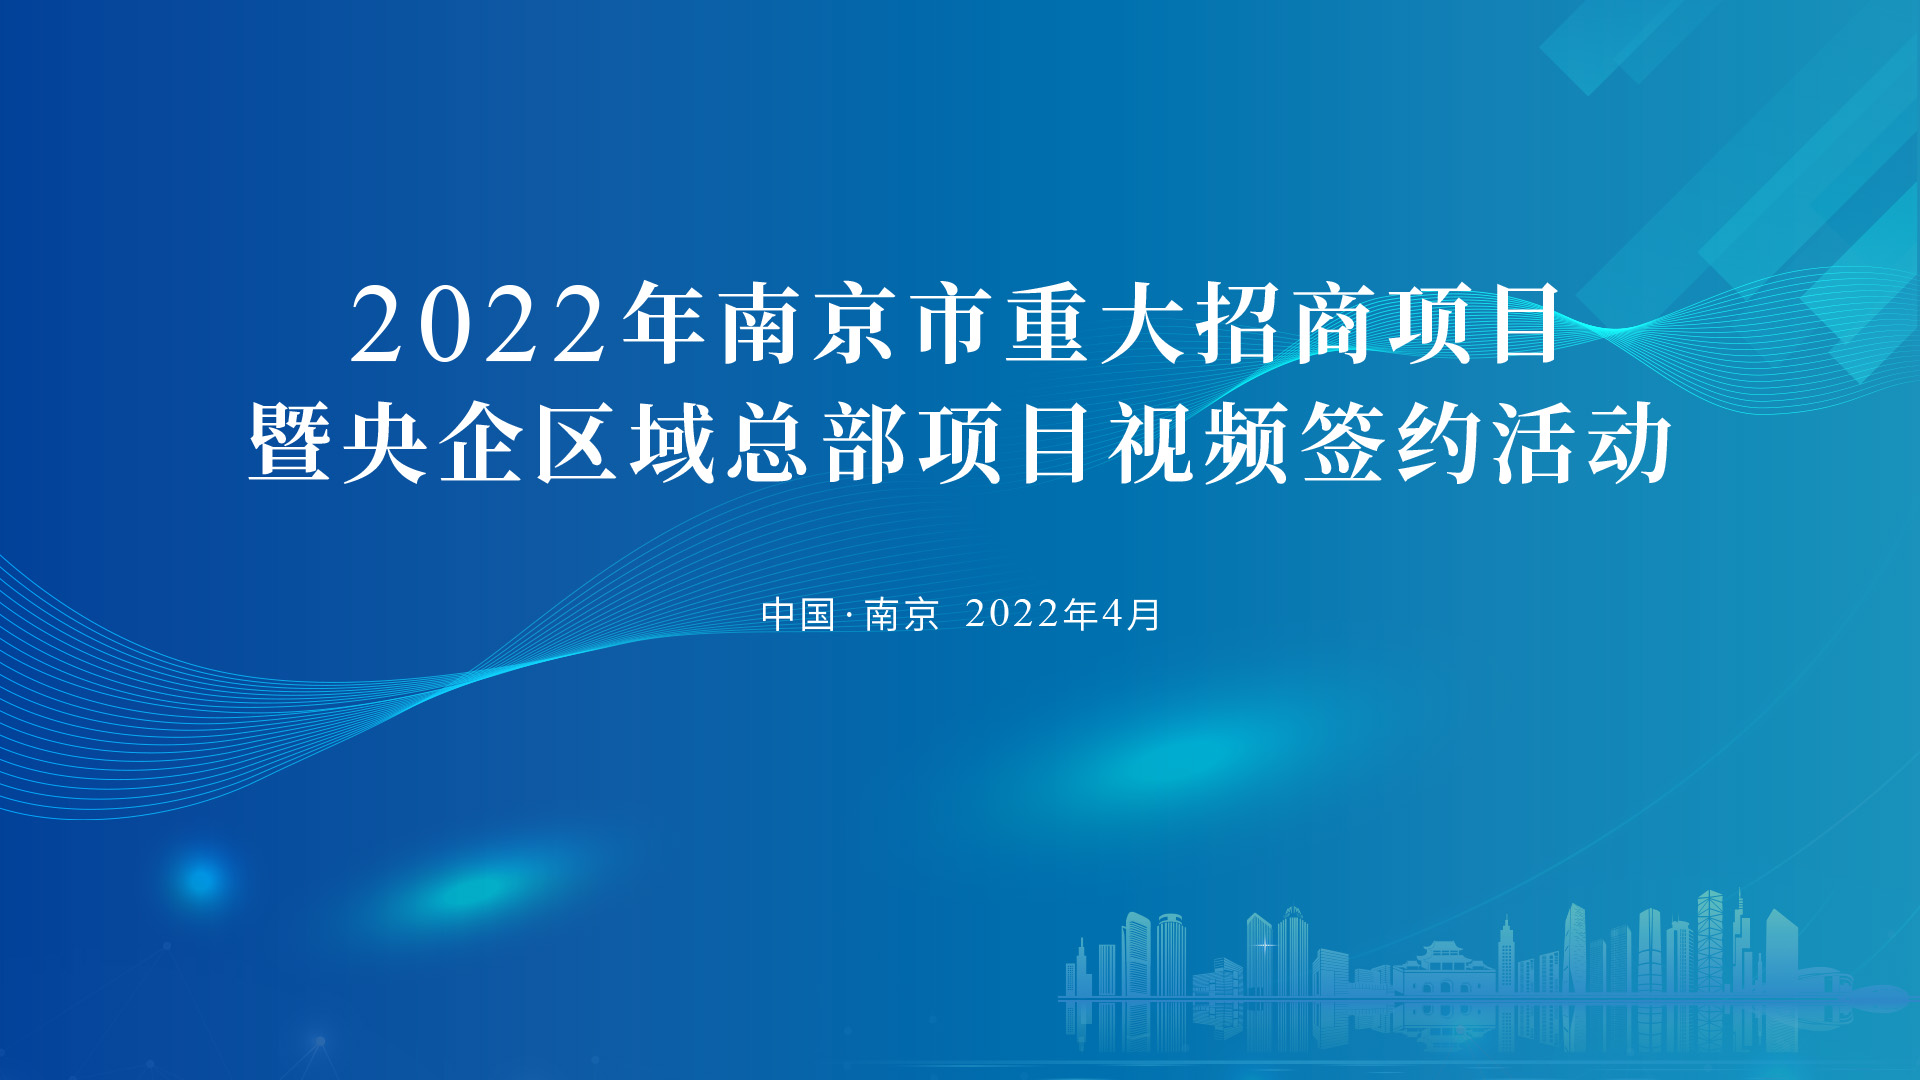 2022年南京市重大招商項目暨央企區域總部項目視頻簽約活動